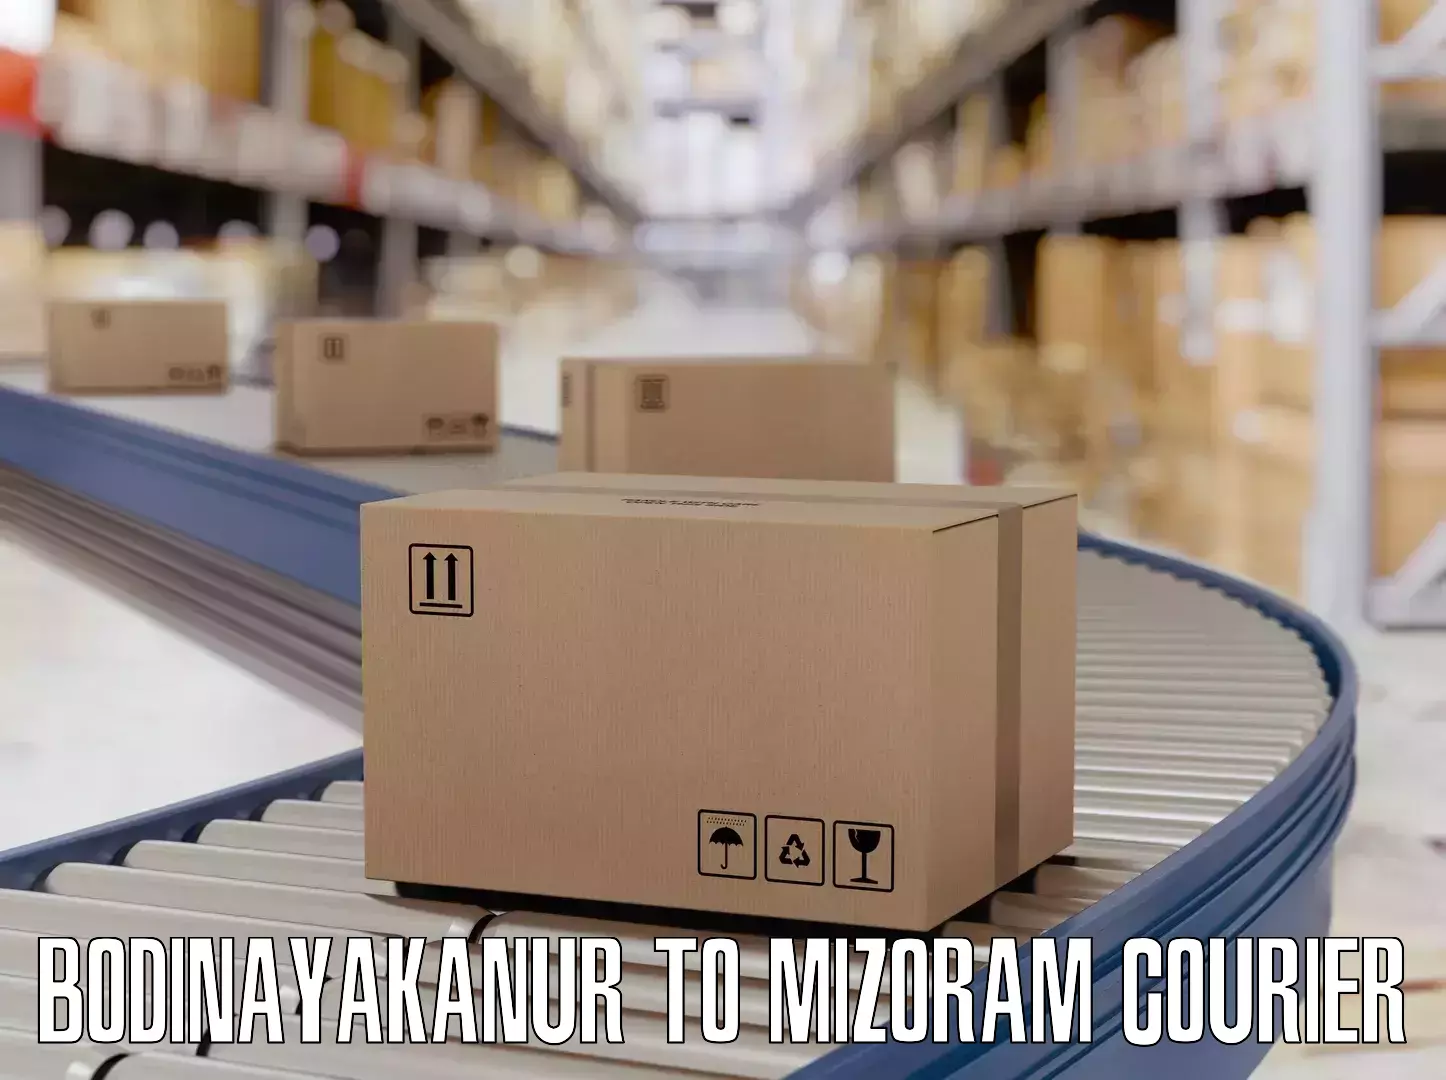 Global baggage shipping Bodinayakanur to Mizoram